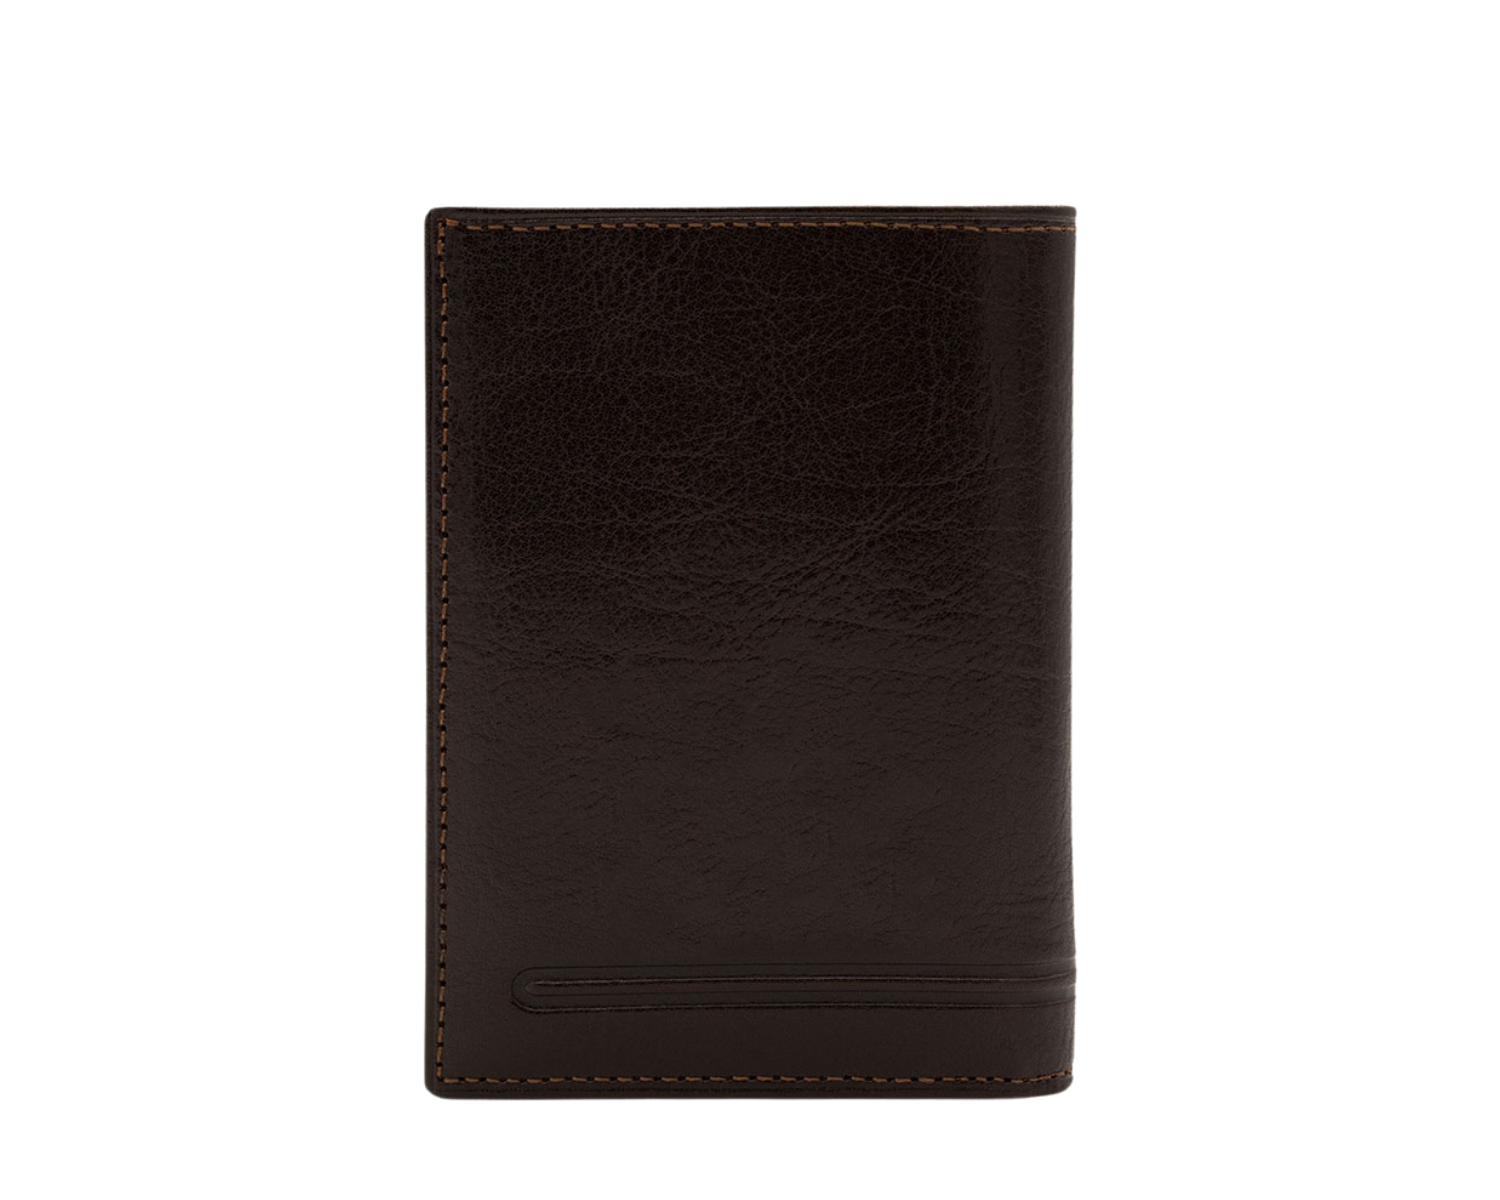 Cavalinho Men's Bifold Leather Wallet - Brown - 28610552-brown2